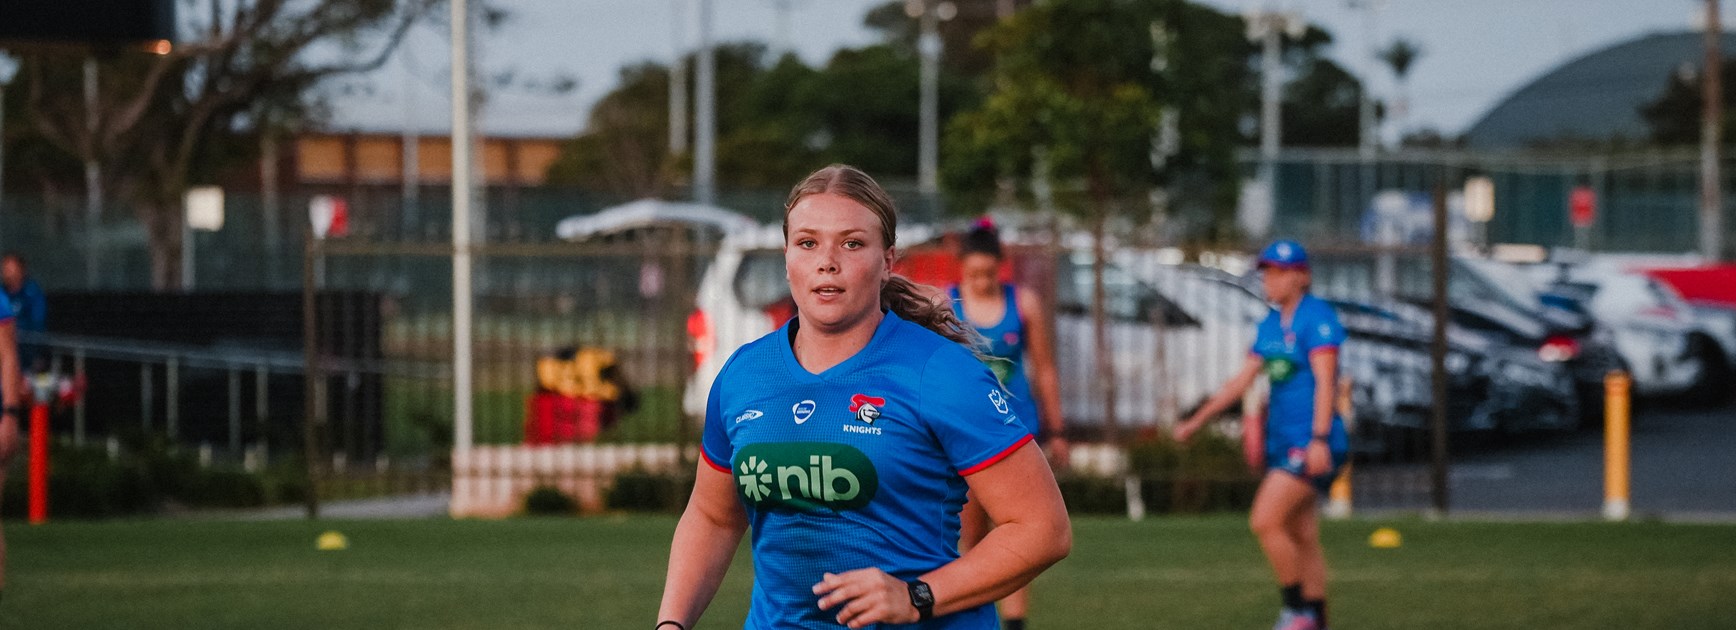 Carter named in Queensland Under 19 Women's Origin squad